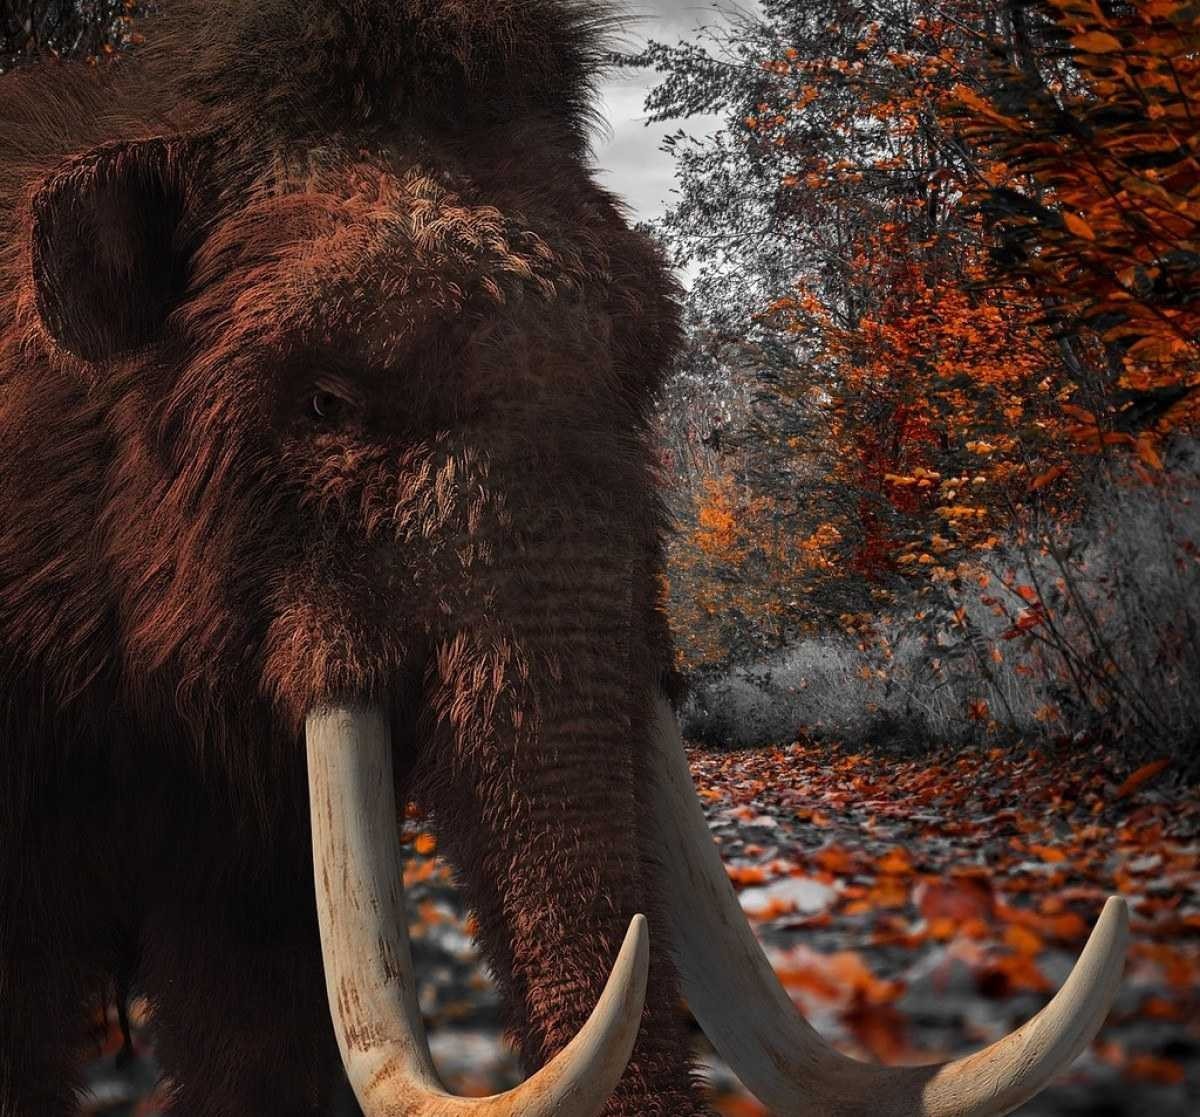 Empresa de biotecnologia promete reviver mamute-lanoso até 2027